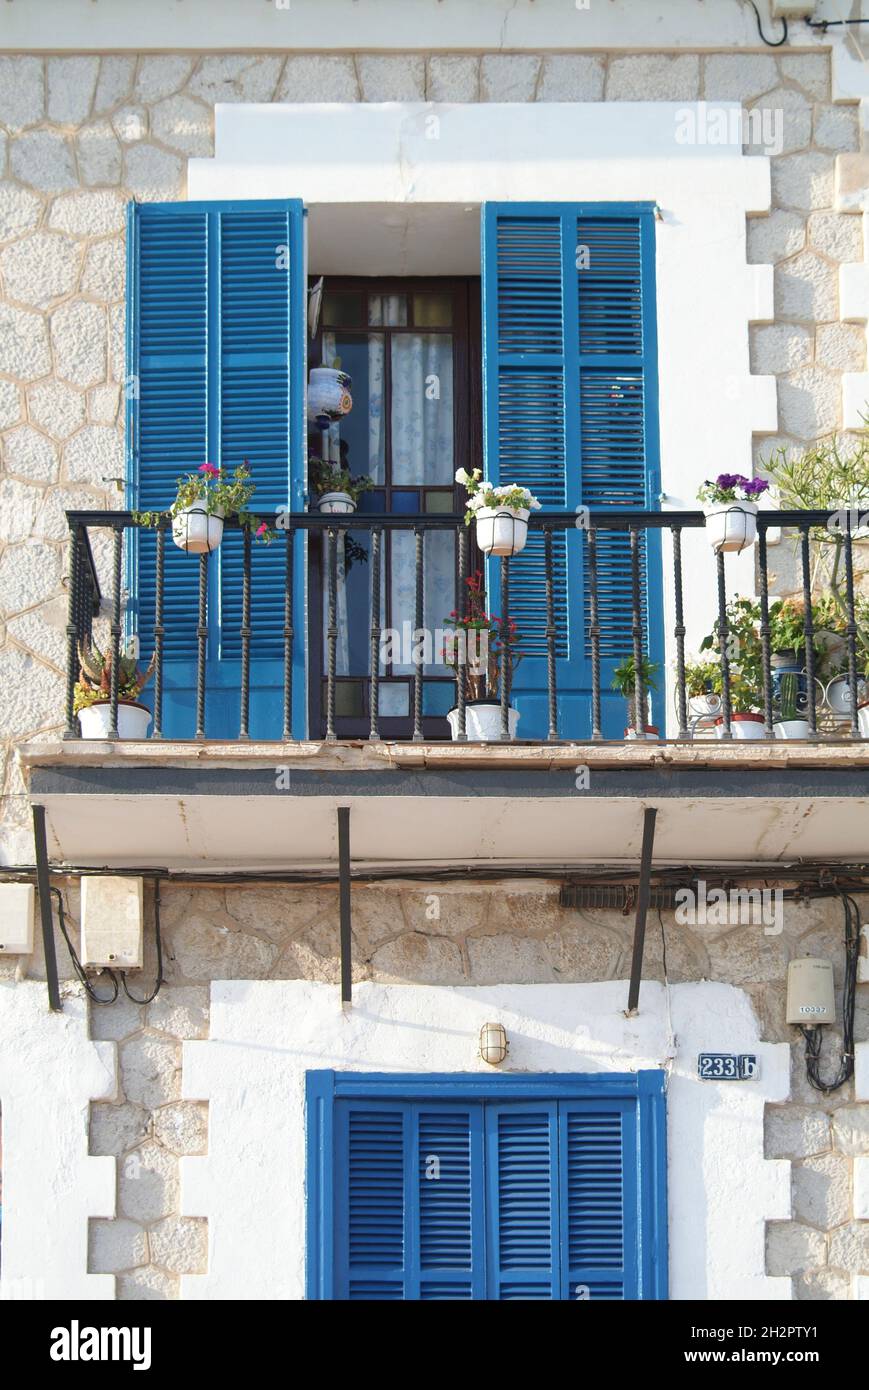 Europa, Spanien, Balearen, Mallorca, Palma, Ciudad Jardi, typische Hausfassade Stock Photo